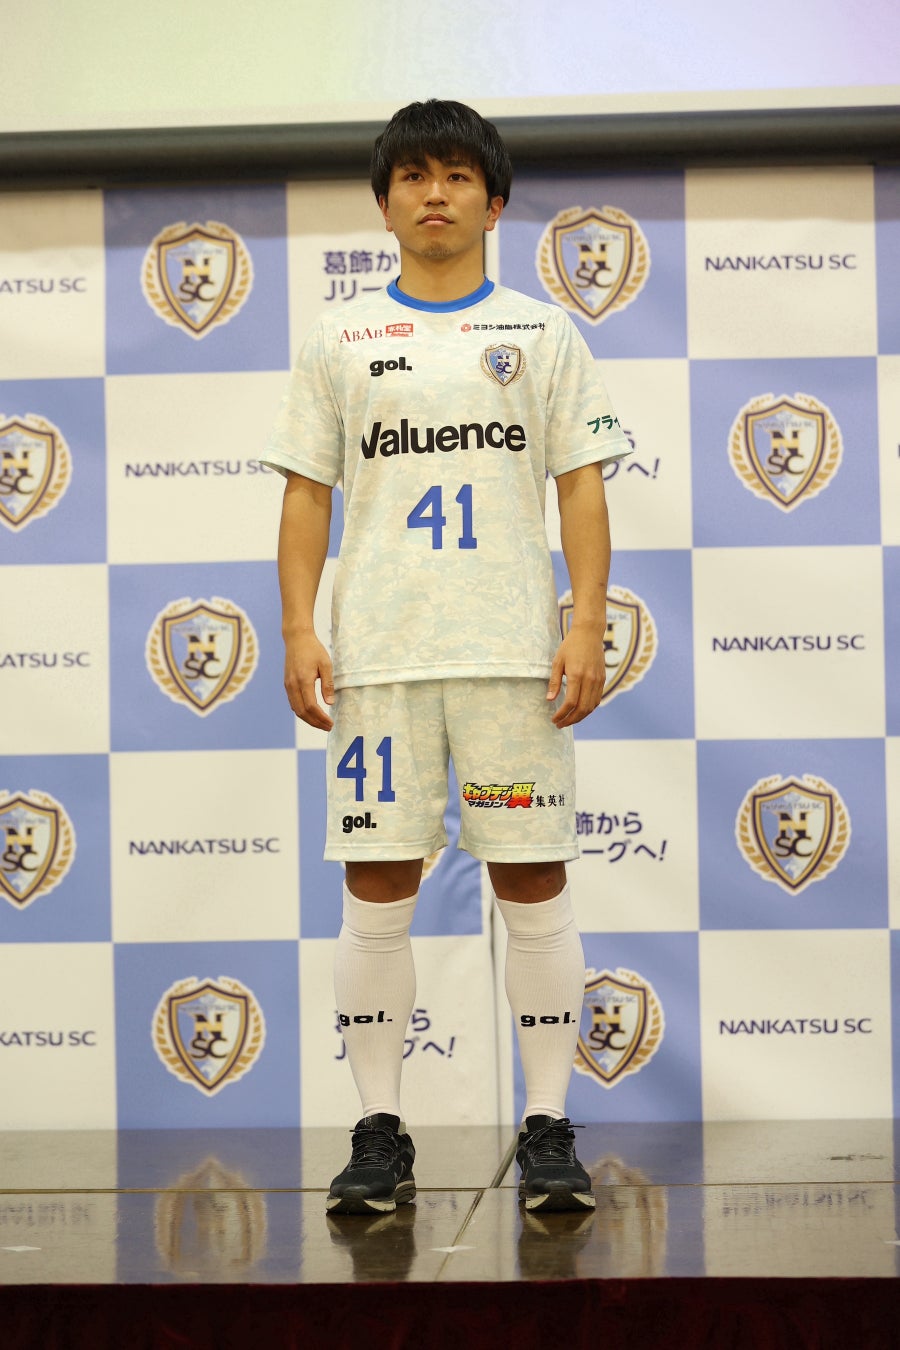 【ミヨシ油脂】『キャプテン翼』の原作者 高橋陽一氏が代表を務めるサッカークラブ「南葛SC」のユニフォームパートナー開始